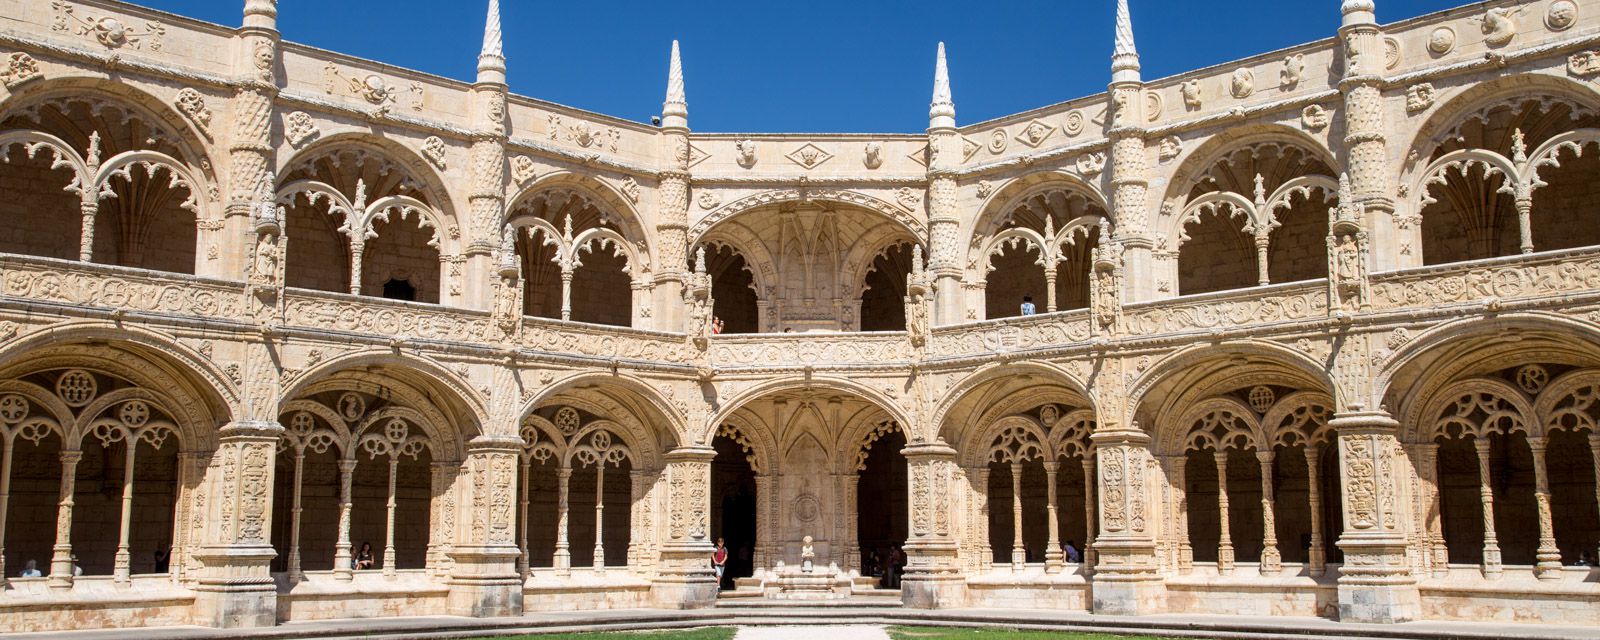 monestry, Belem, Lisbon, Portugal